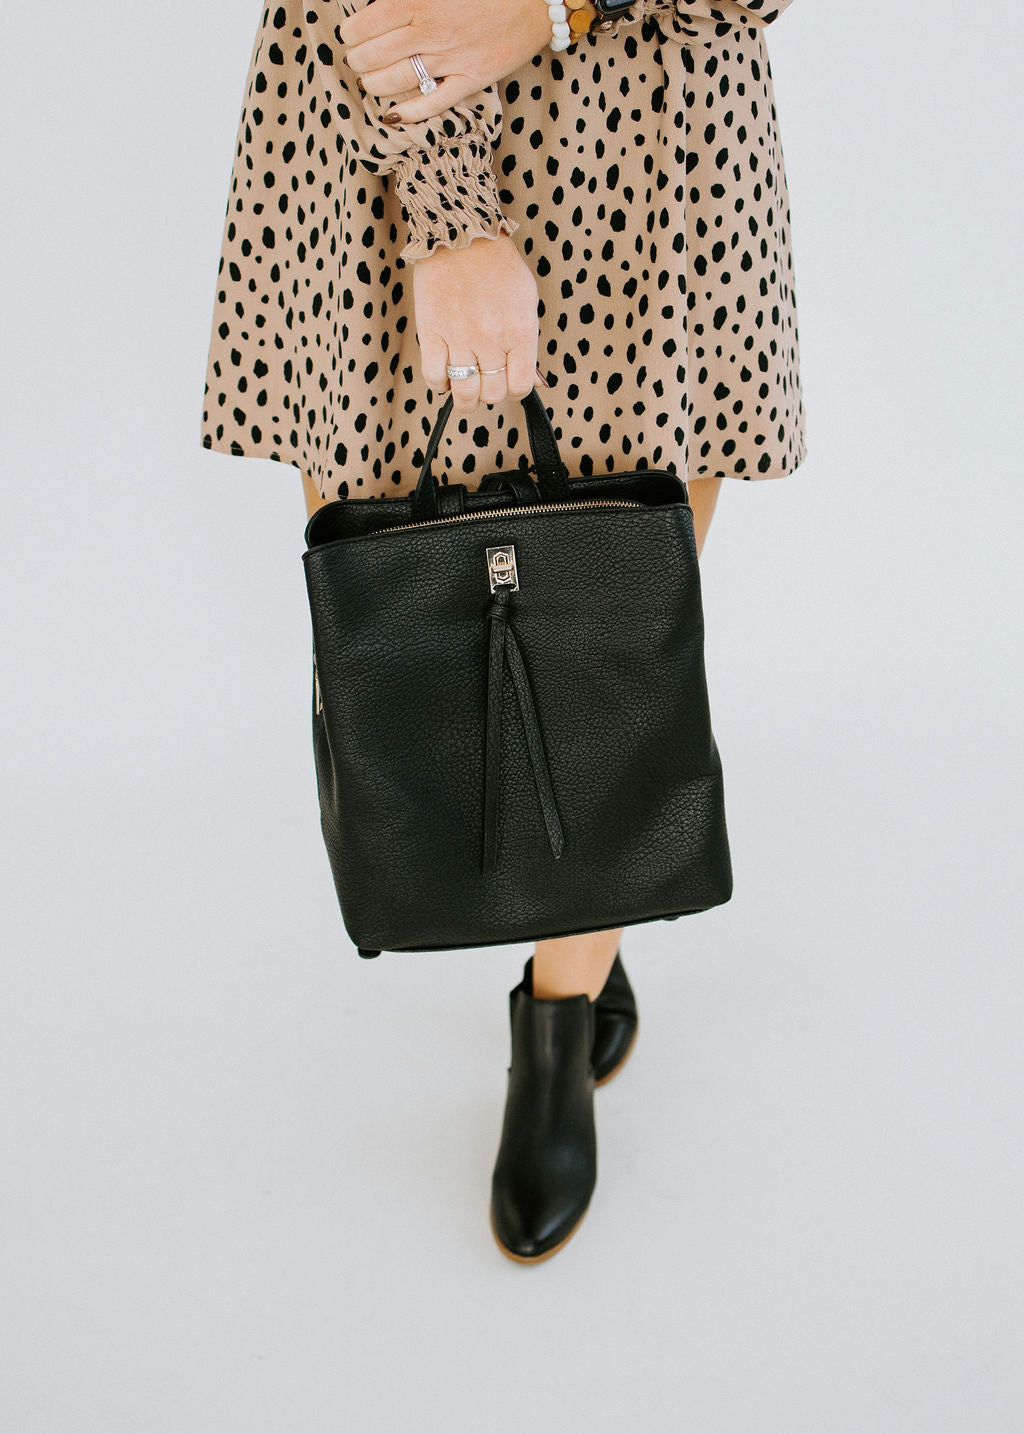 Moda Luxe Sylvia Backpack